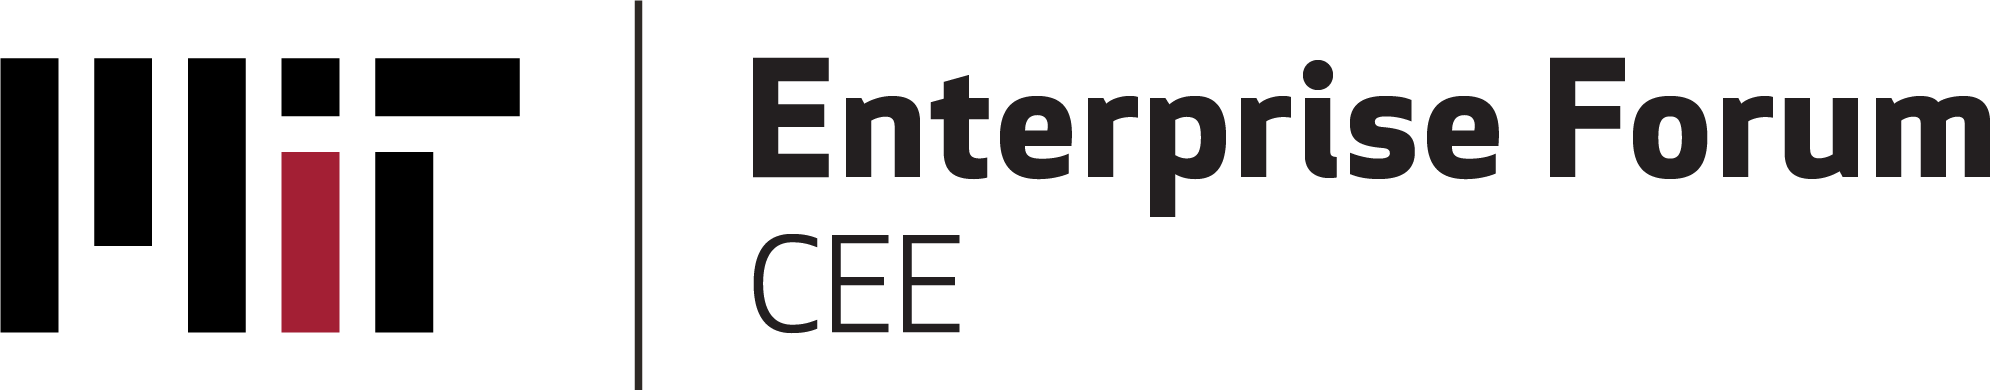 mit enterprise forum cee logo